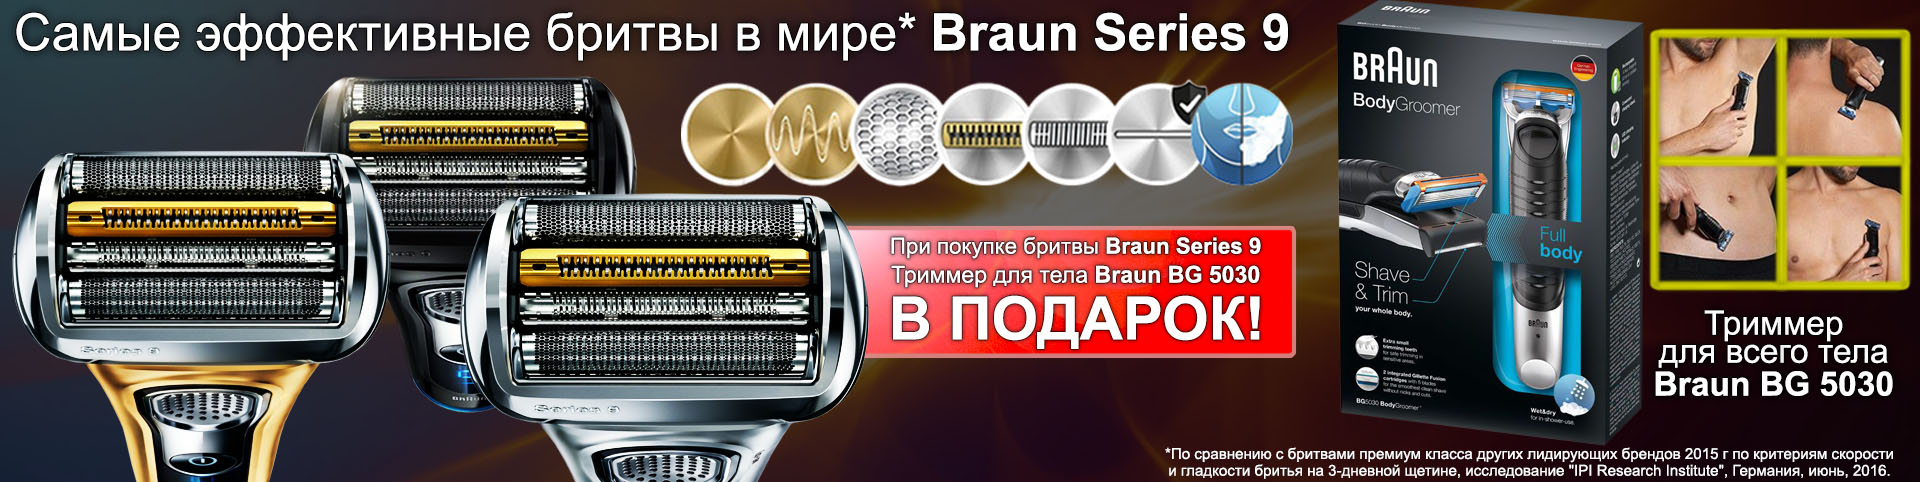 Покупая бритву Braun Series 9, в подарок вы получаете триммер для тела BG 5030